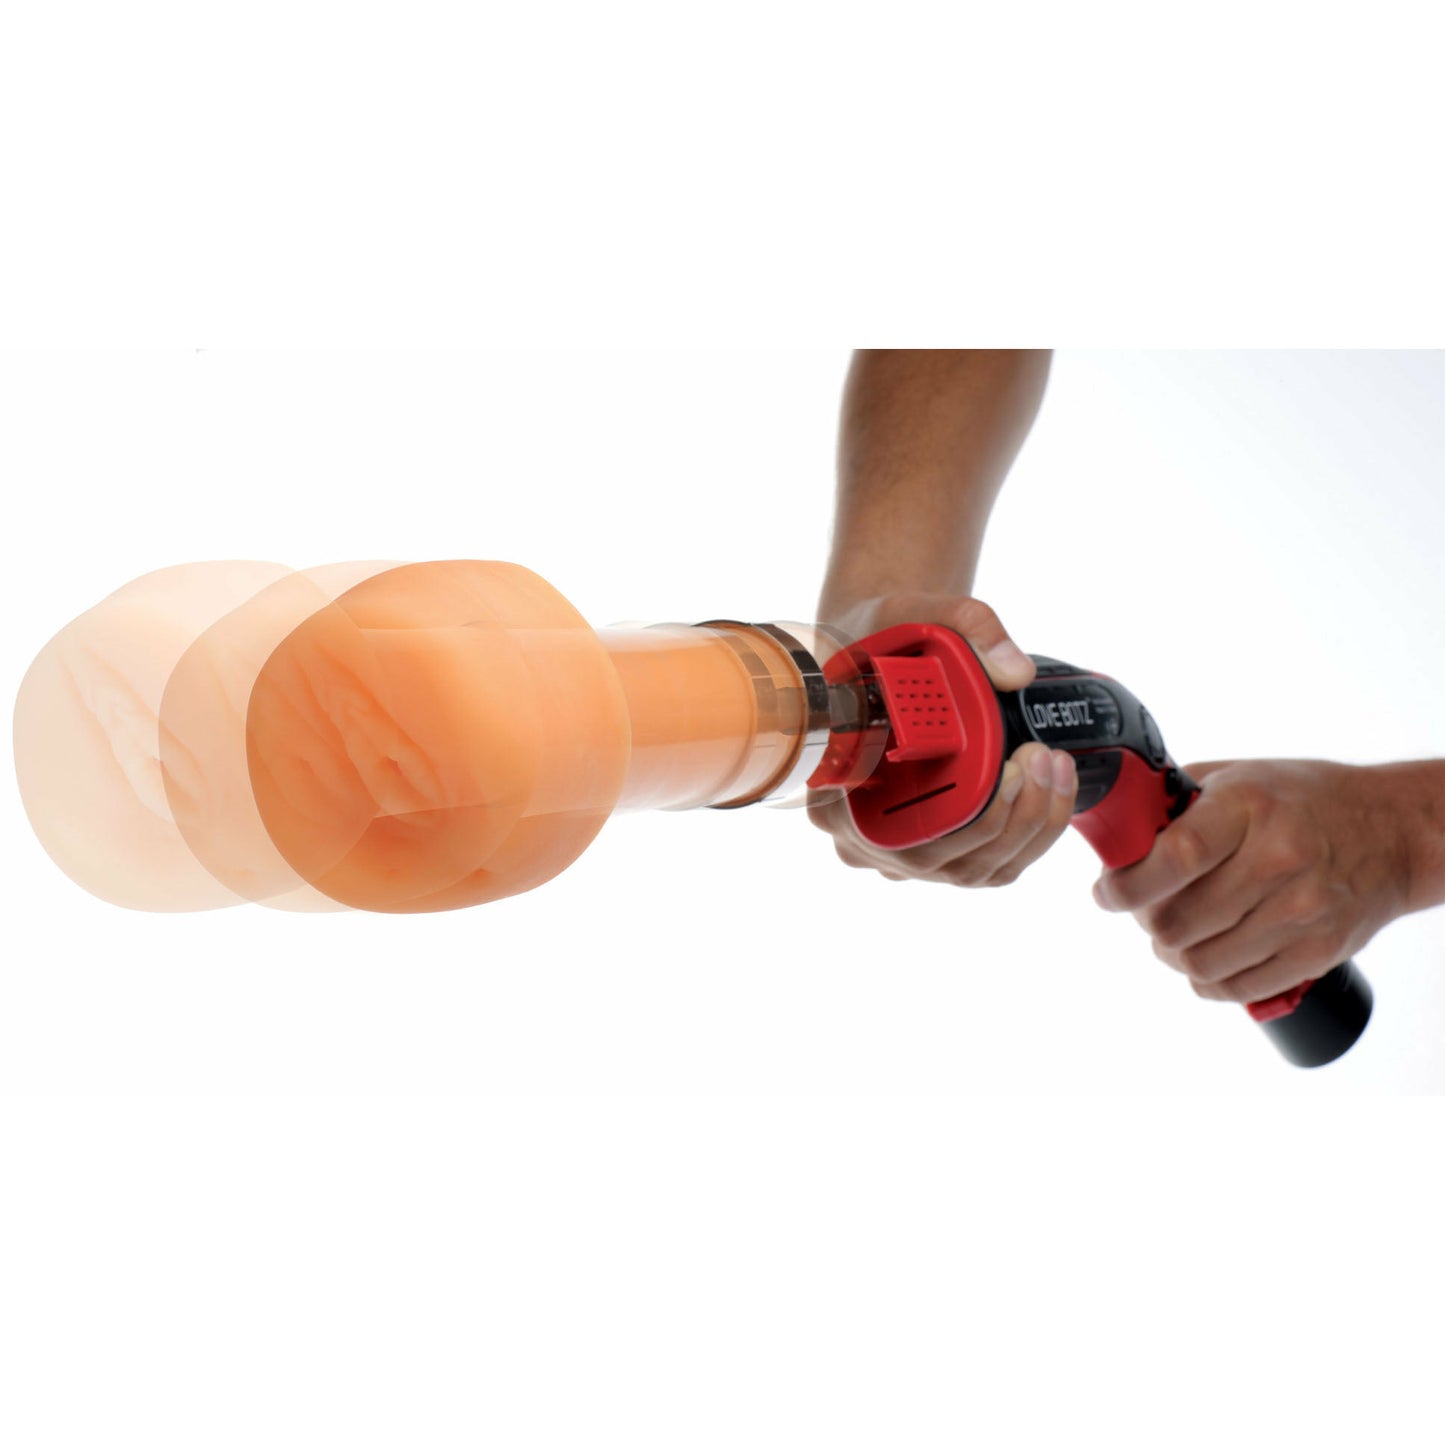 Thrust-Bot Handheld Multi-Speed Sex Machine